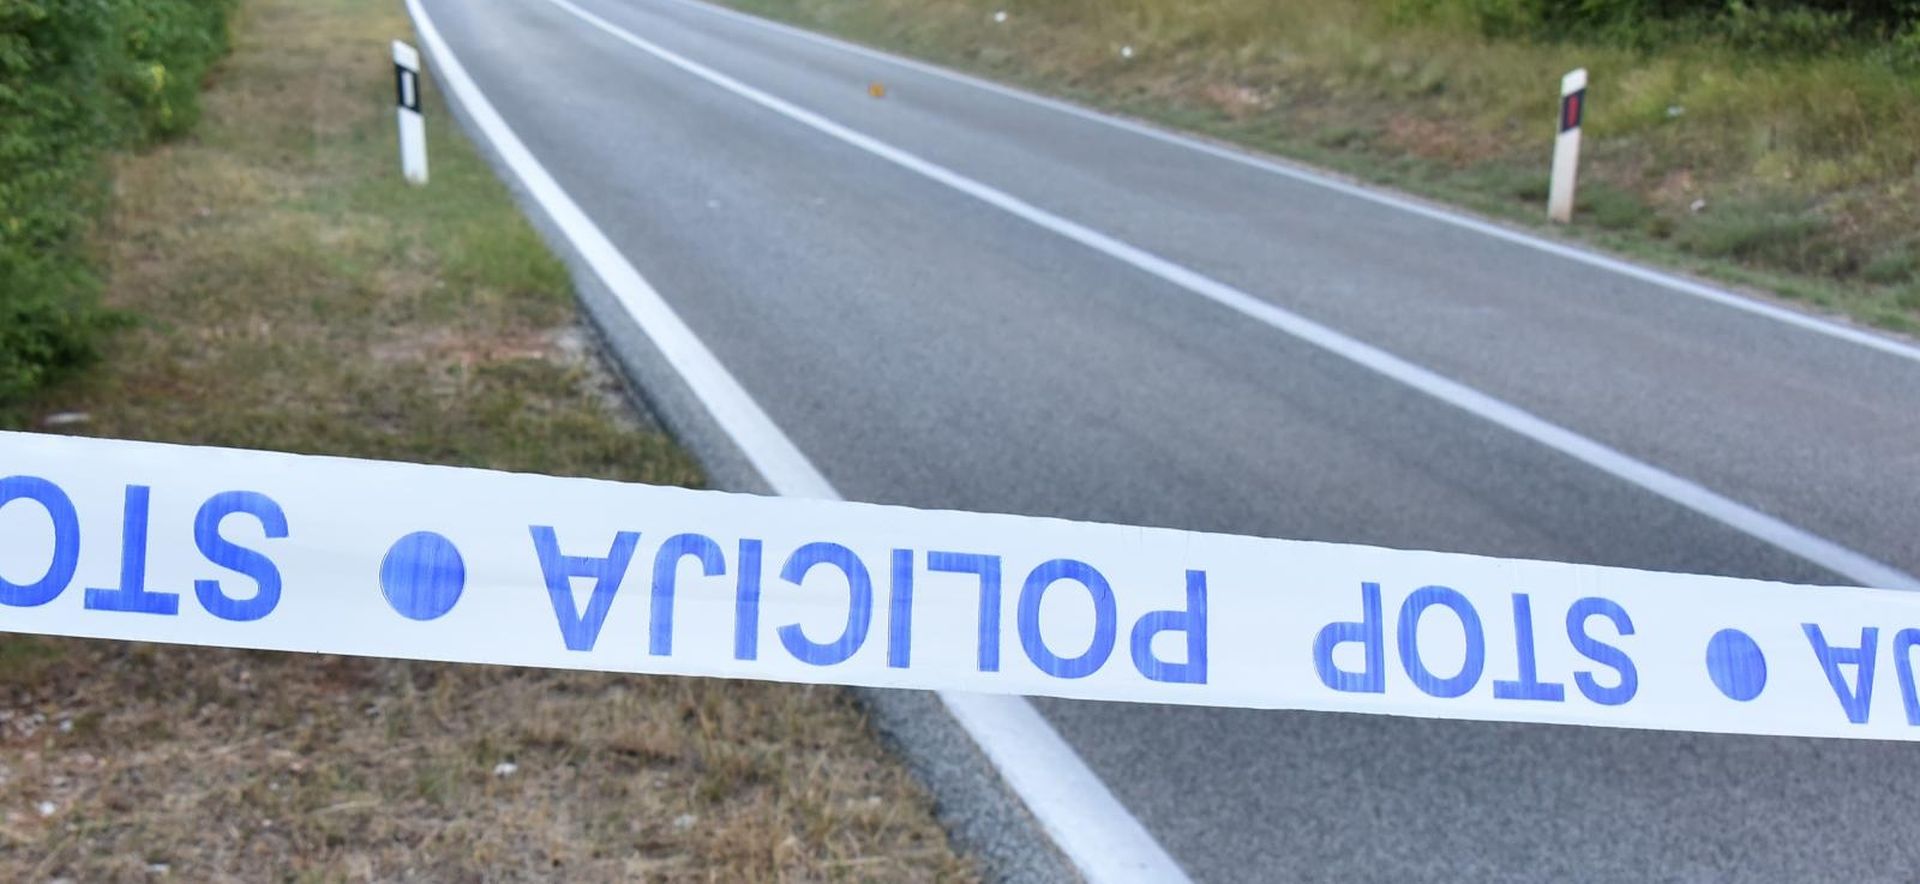 20.07.2019., Bale - Na cesti Vodnjan - Bale smrtno stradao motociklist nakon slijetanja s ceste. 
Photo: Dusko Marusic/PIXSELL